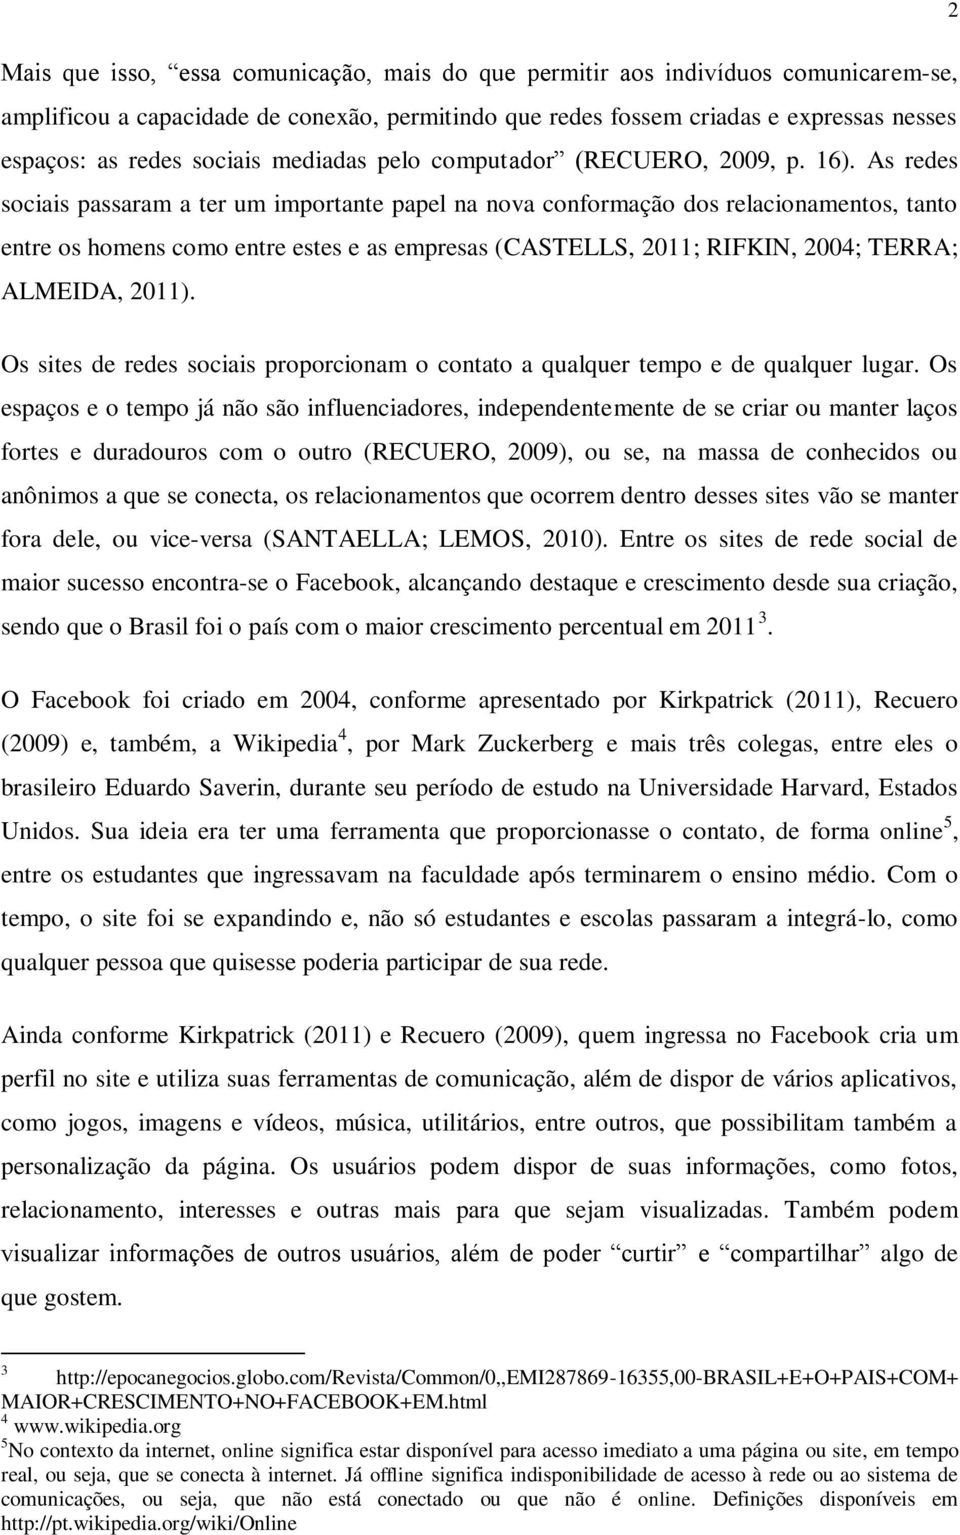 As redes sociais passaram a ter um importante papel na nova conformação dos relacionamentos, tanto entre os homens como entre estes e as empresas (CASTELLS, 2011; RIFKIN, 2004; TERRA; ALMEIDA, 2011).